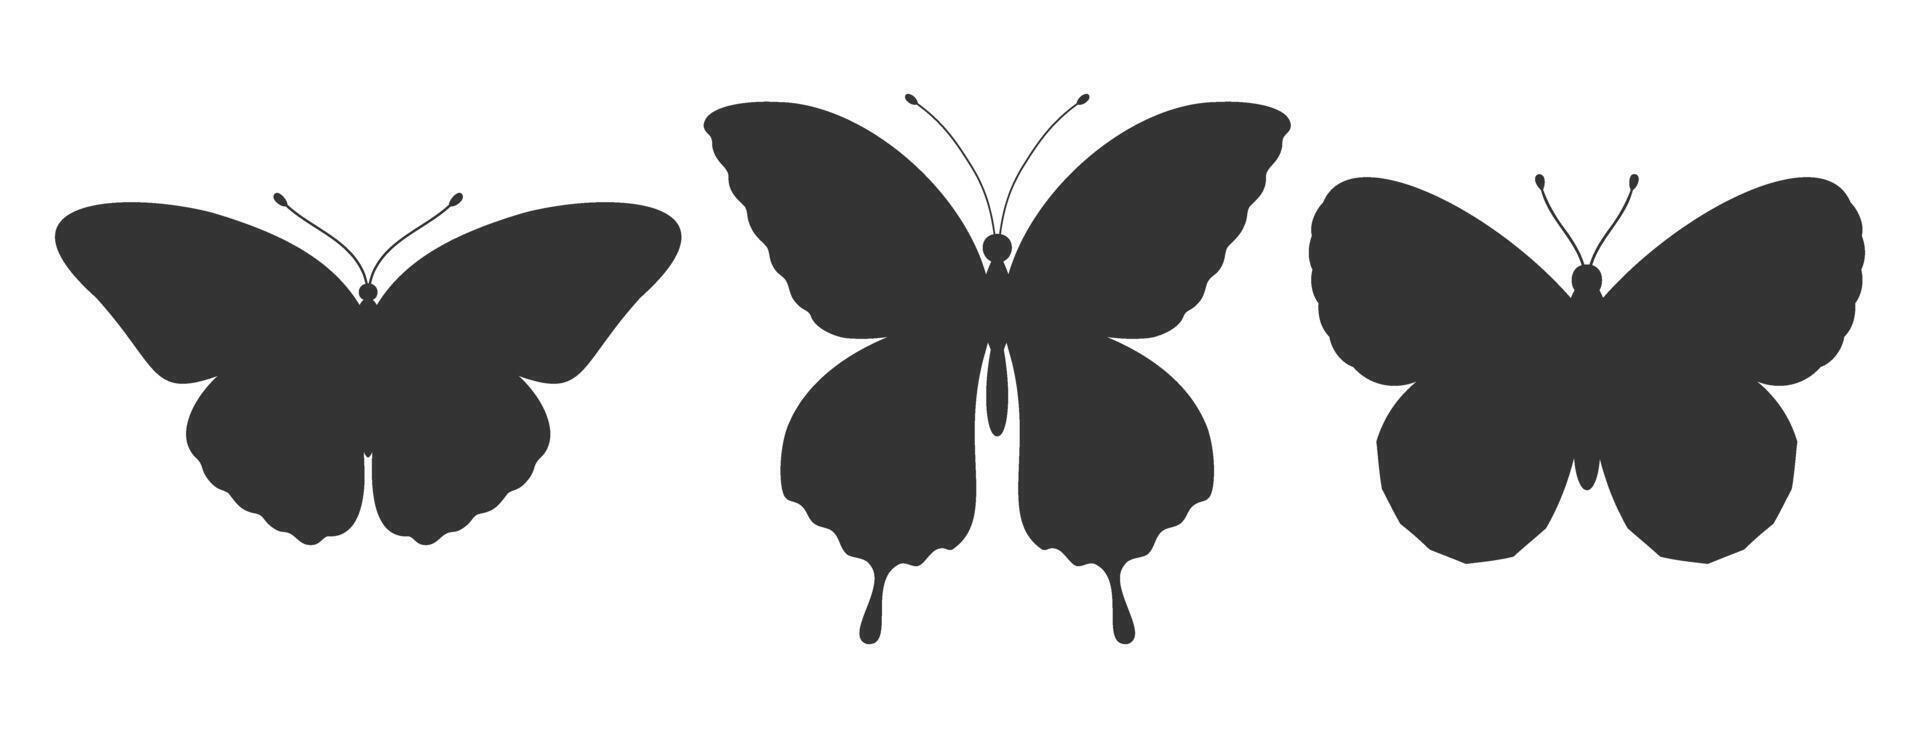 einstellen von drei Schmetterling Silhouetten. Insekt Symbole, Tätowierungen. einfach schwarz Formen von Schmetterlinge und Motten. Vektor Illustration